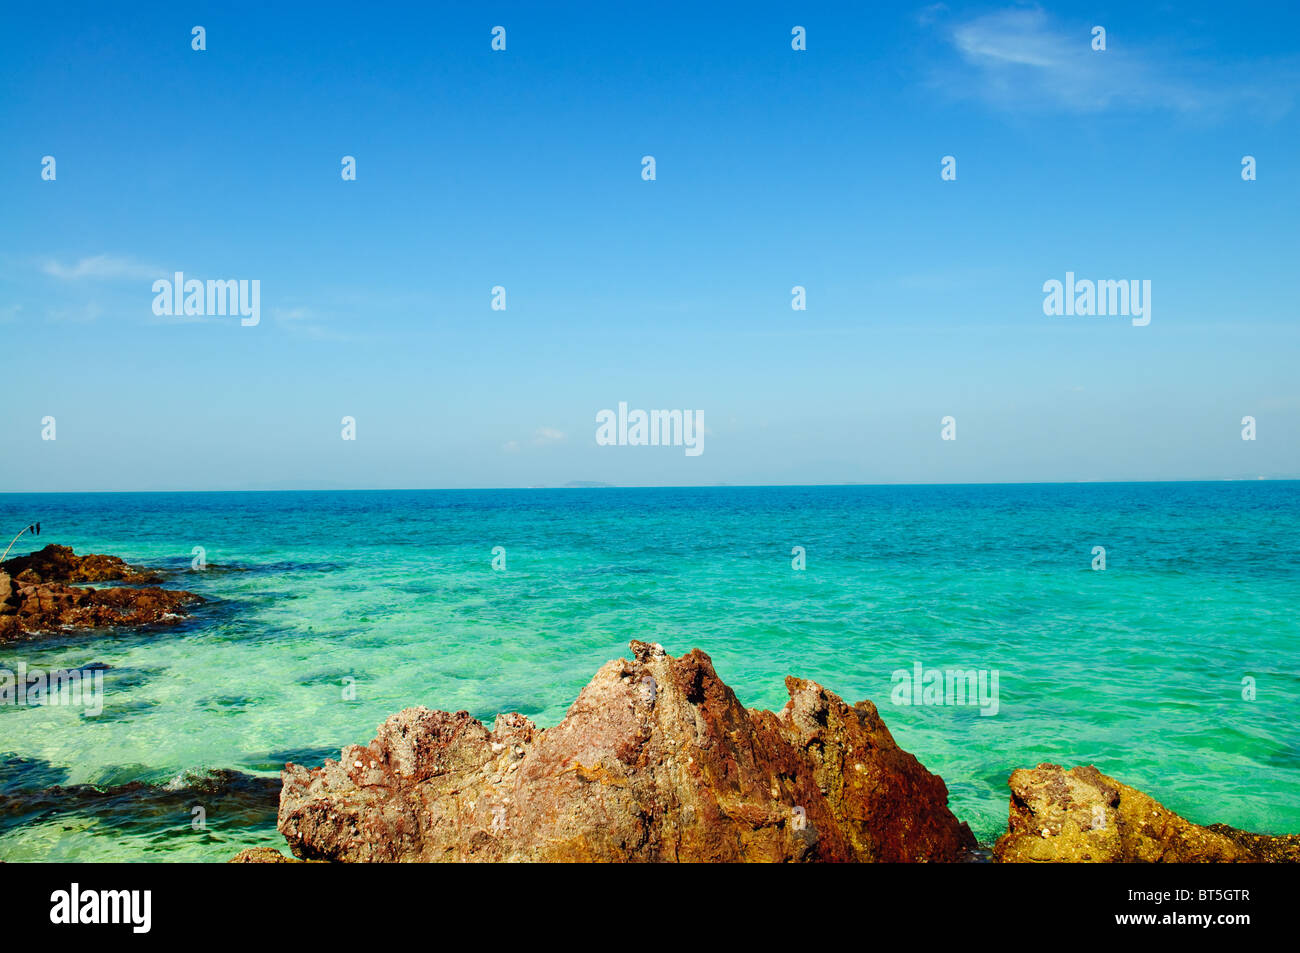 Paesaggio tropicale - riva del mare sull'isola deserta Foto Stock